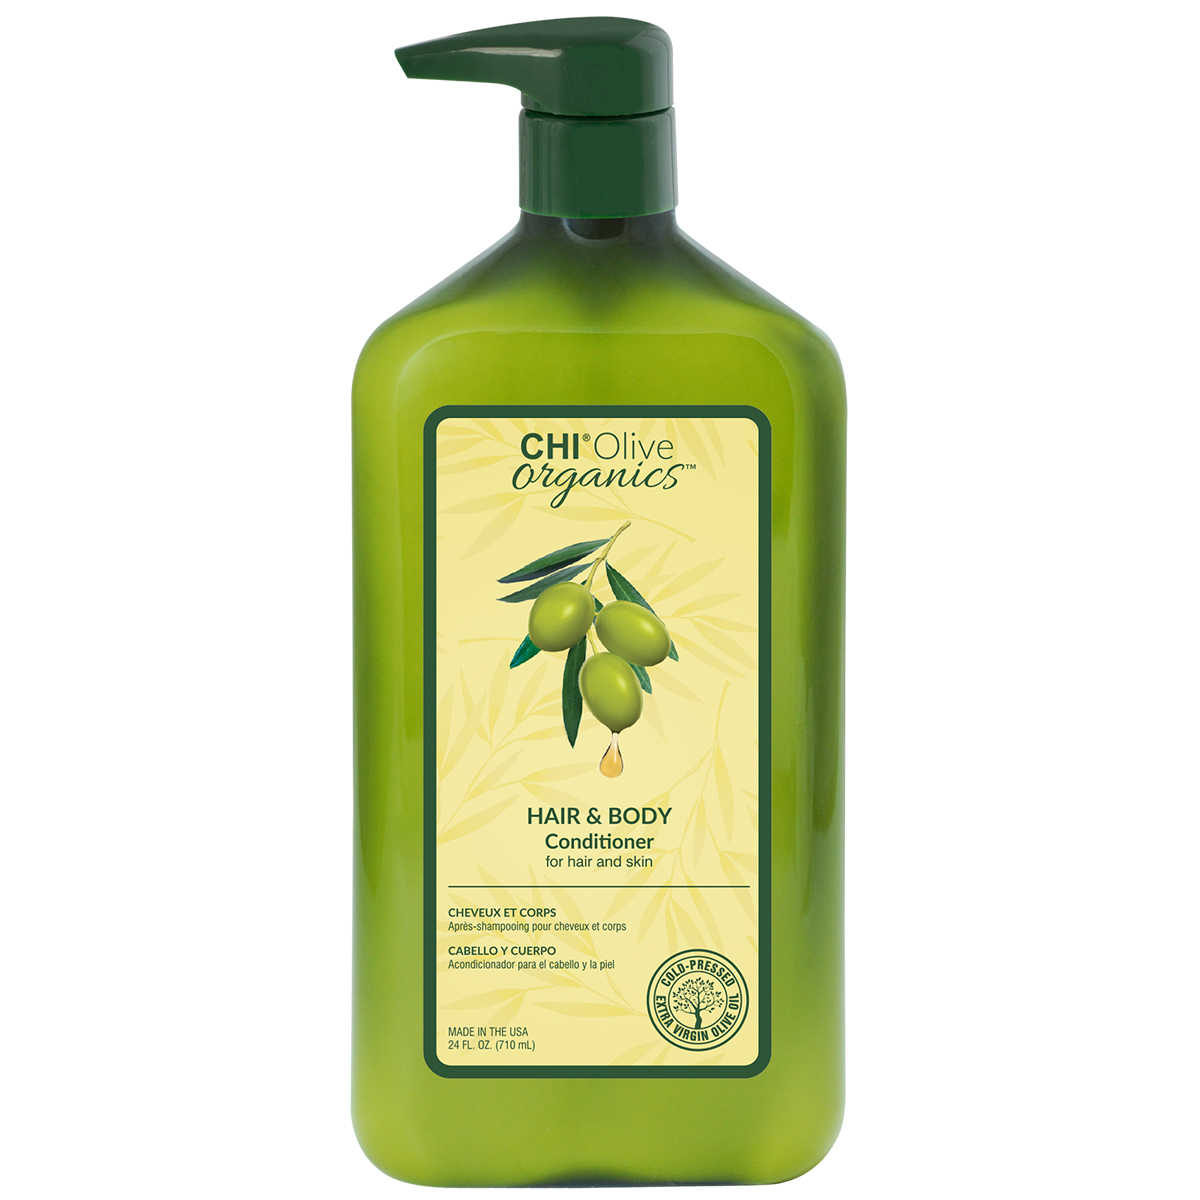 FAROUK CHI Olive Organics plaukų ir kūno kondicionierius su ekologišku alyvuogių aliejumi, 710ml